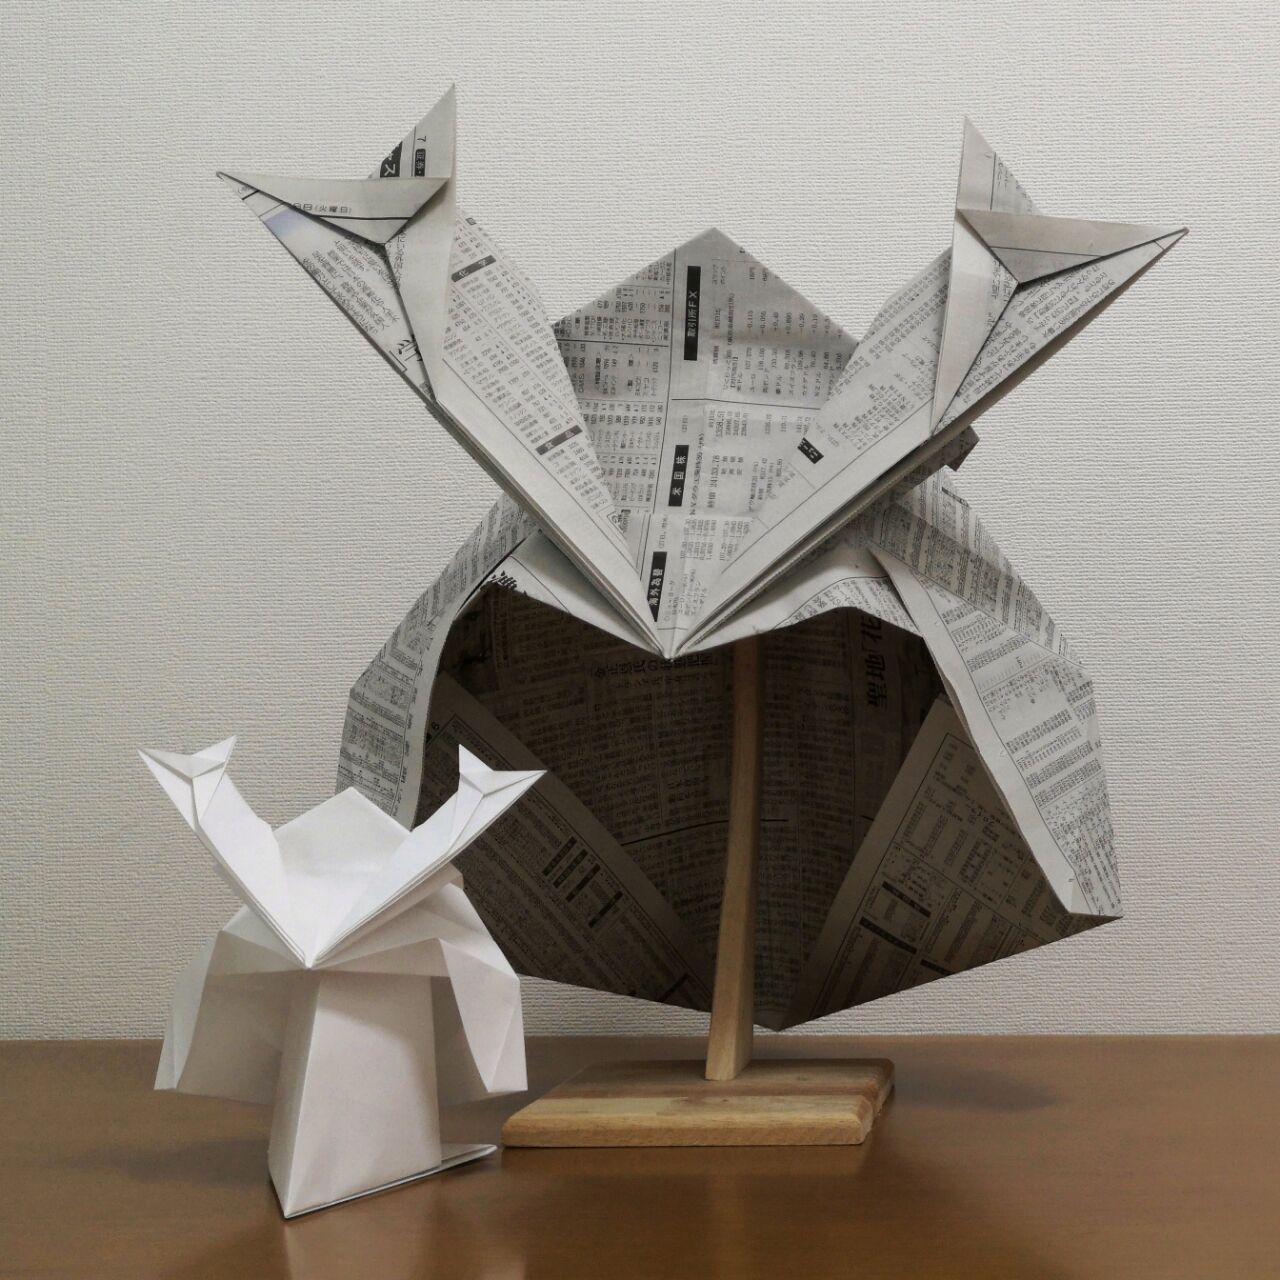 コピー用紙で折る兜とその折り方 そうだ 折り紙しよう